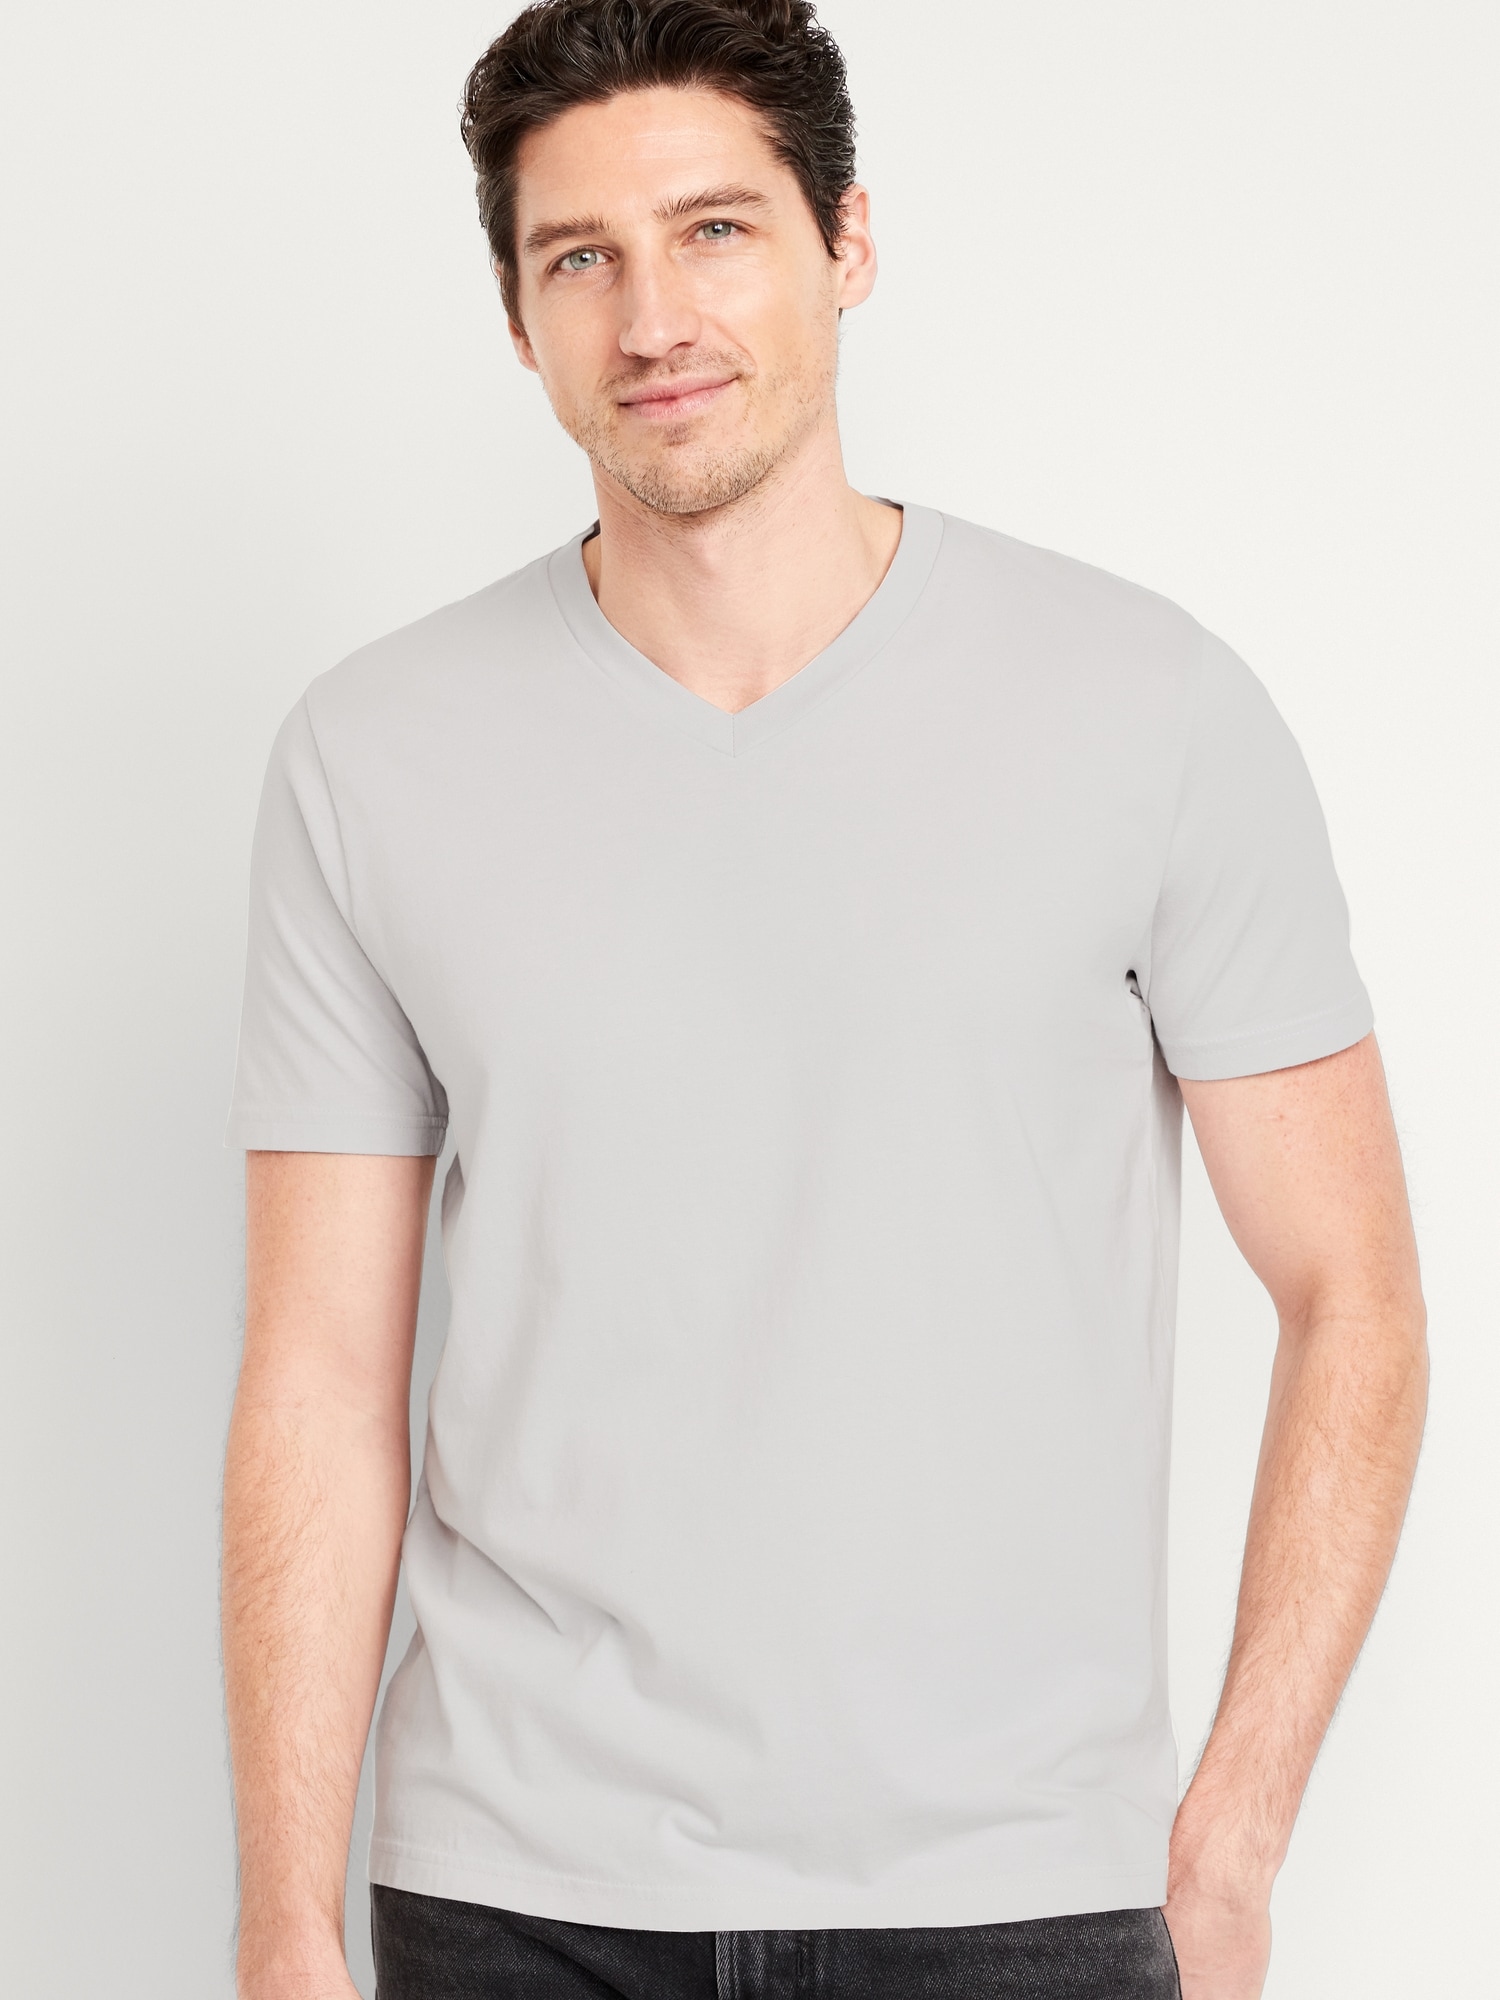 Soft-Washed V-Neck T-Shirt